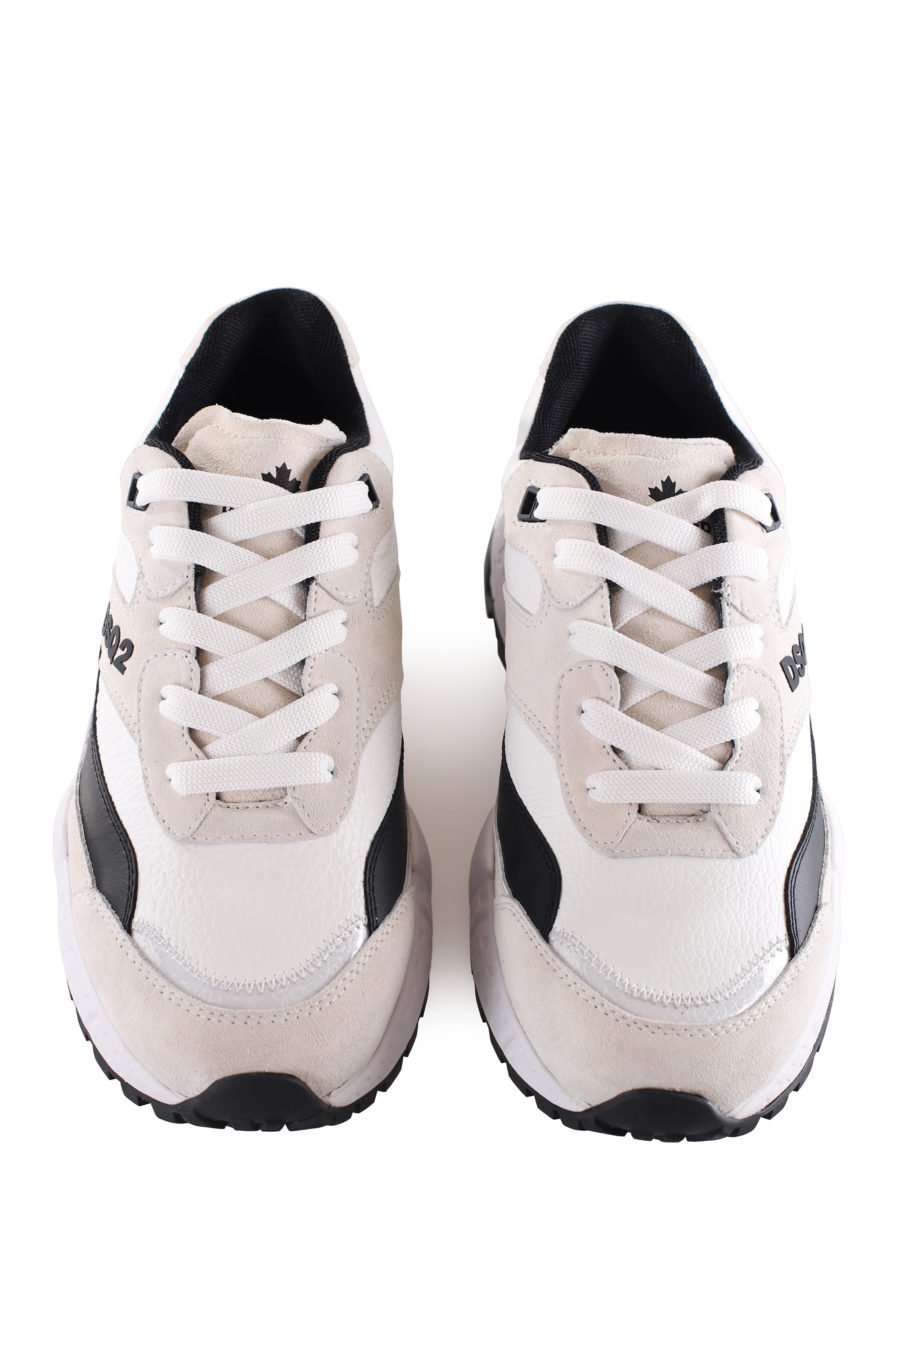 Zapatillas blancas con logo "Dsq2" y detalles negros - IMG 9539